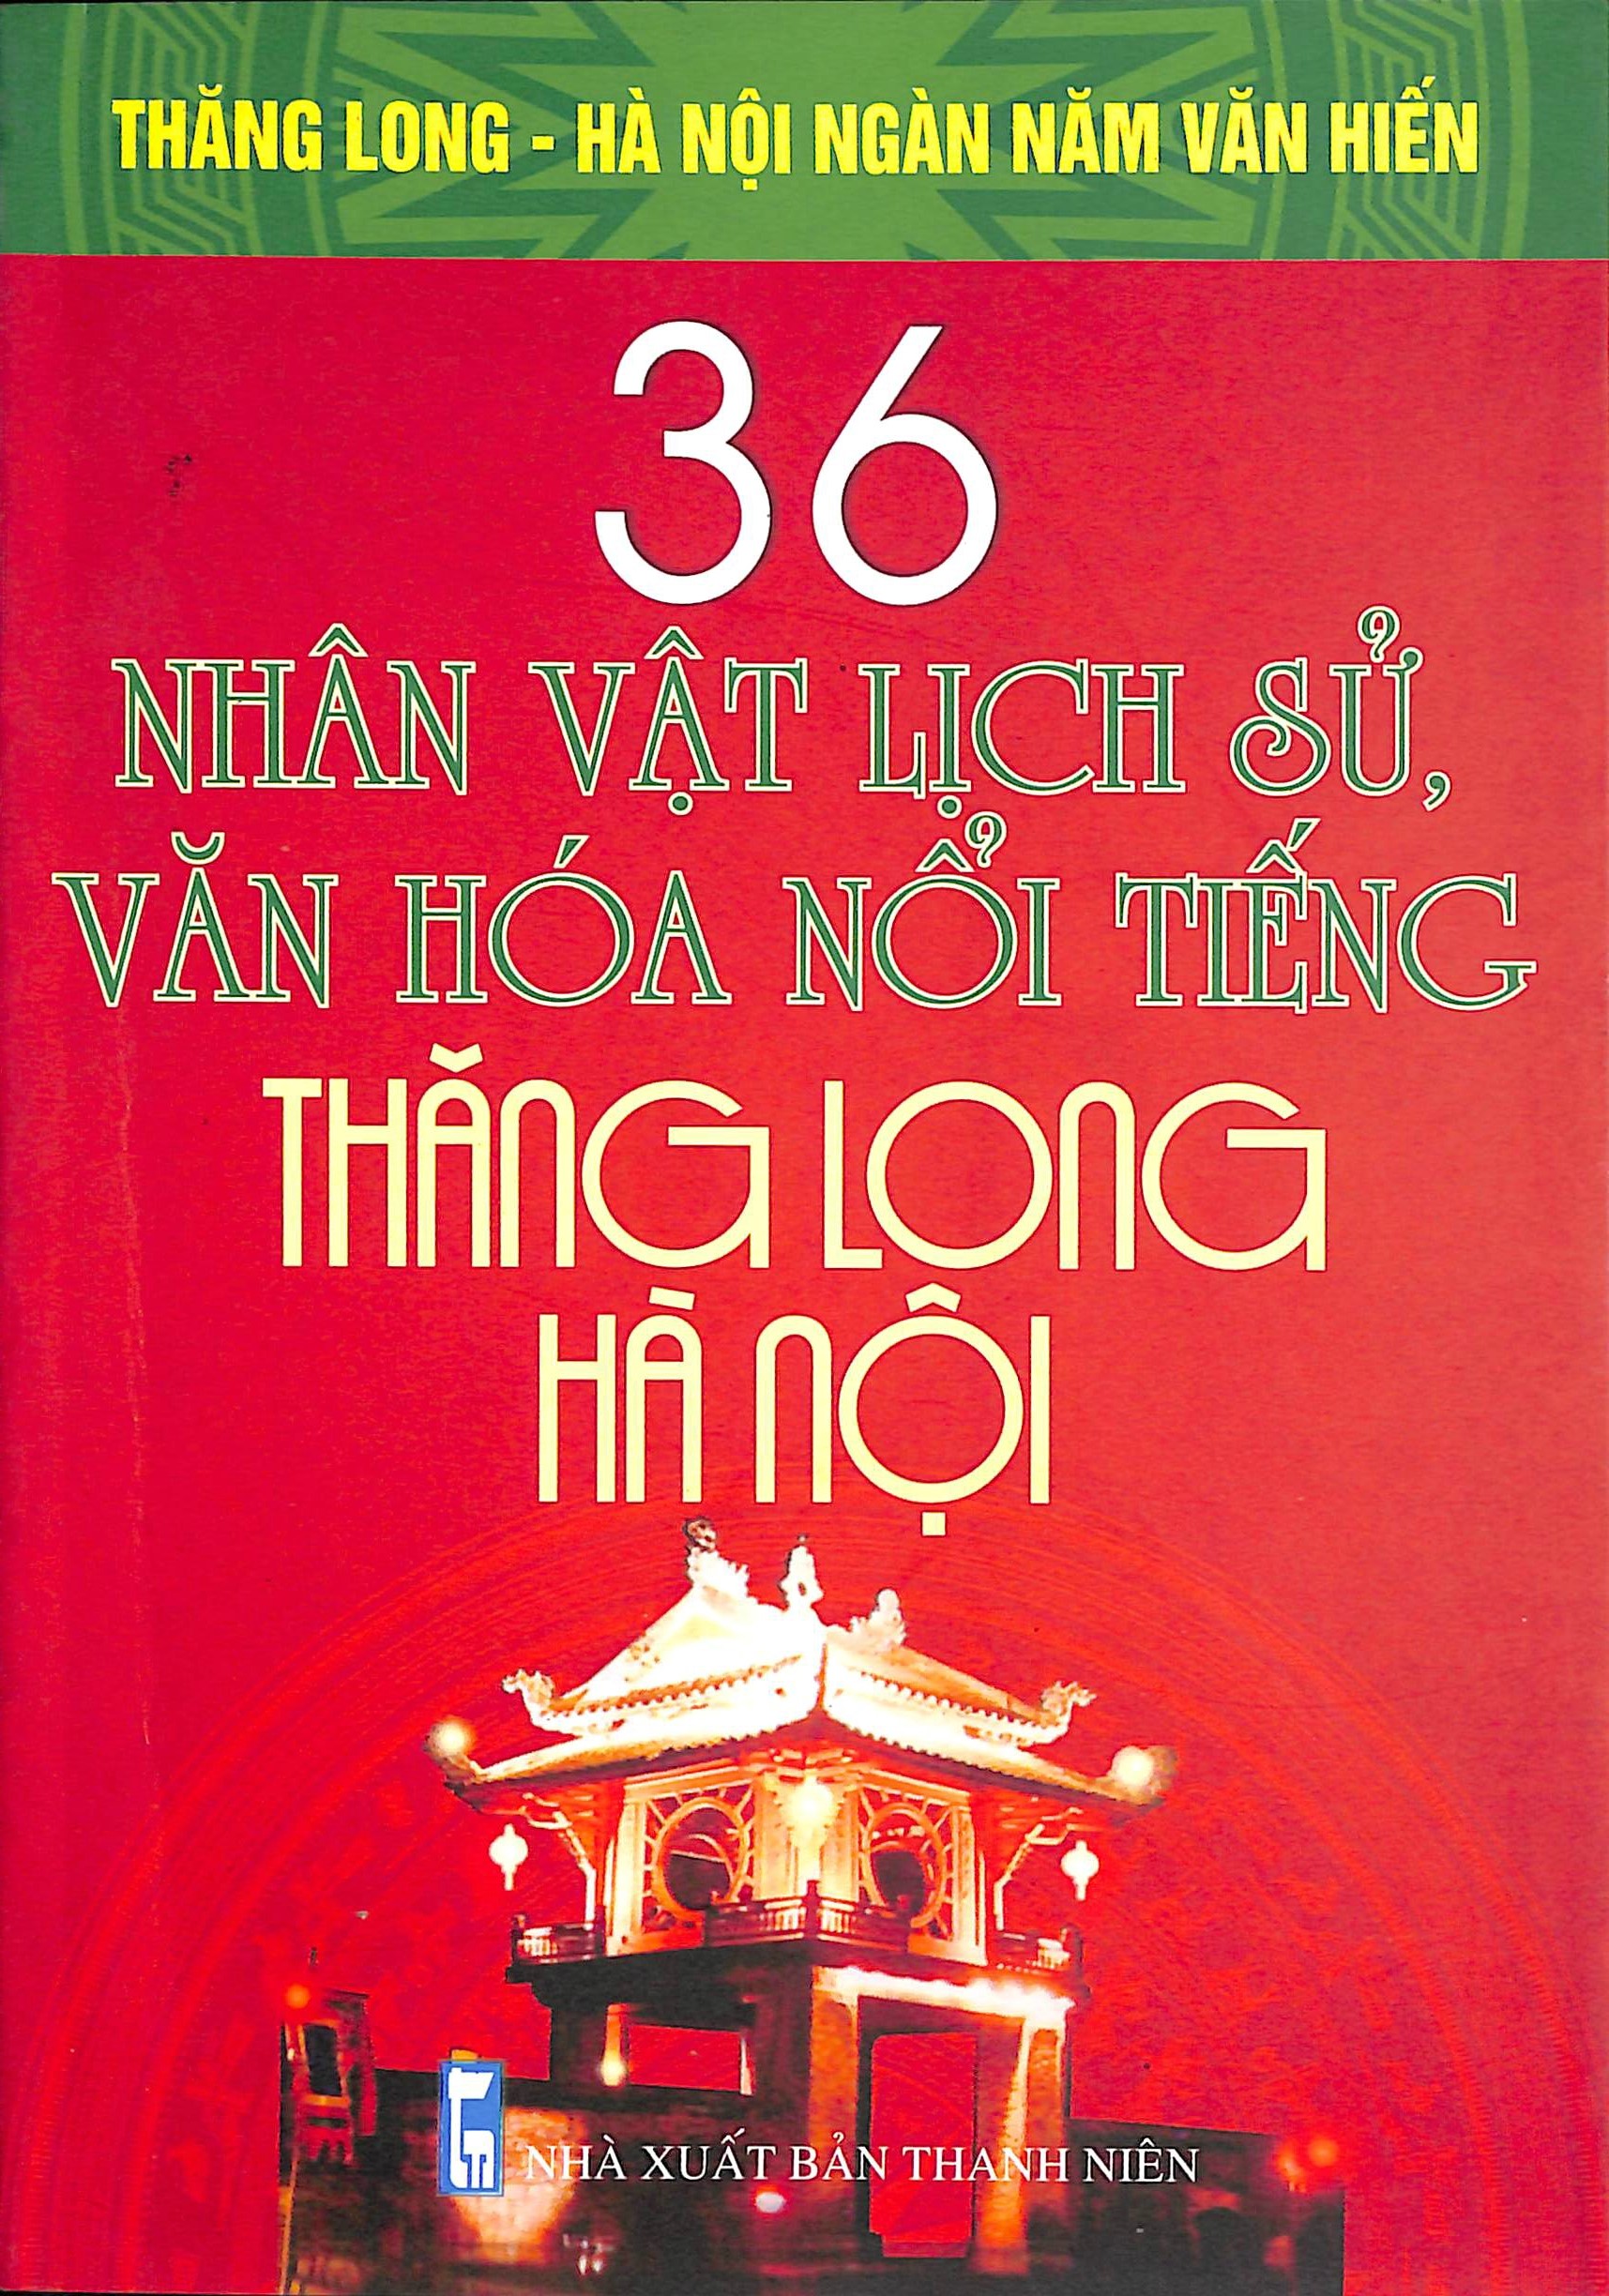 36 nhân vật lịch sử, văn hoá nổi tiếng Thăng Long - Hà Nội